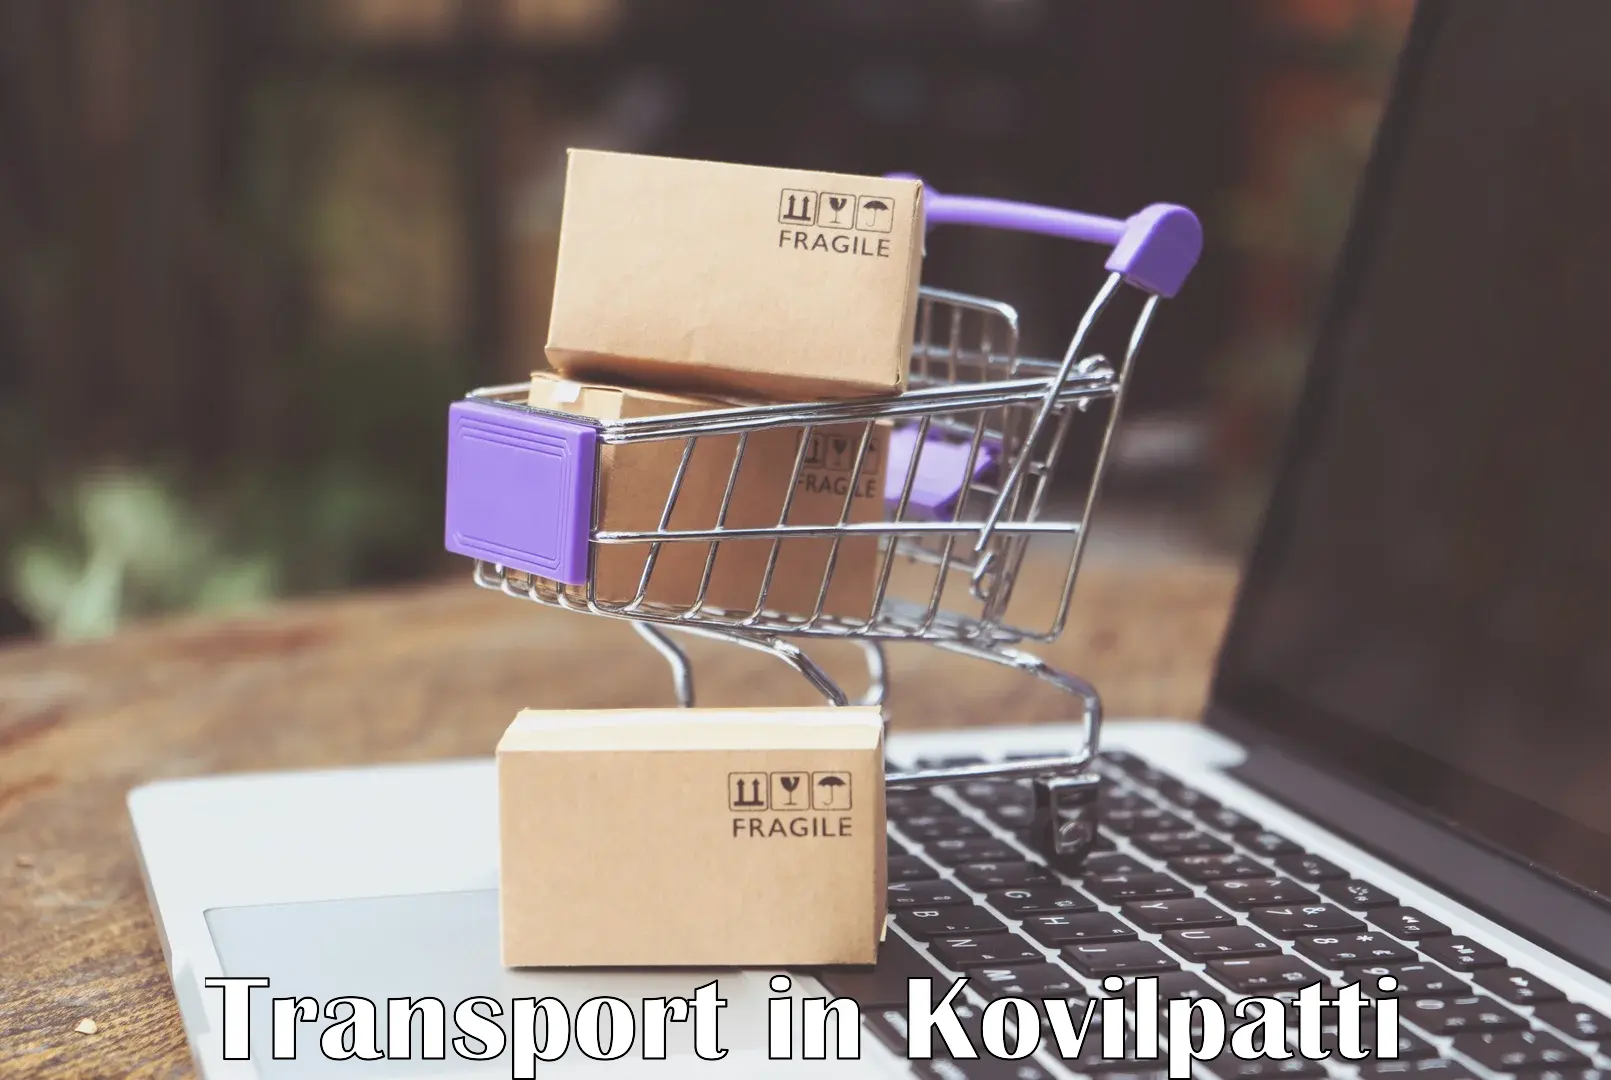 Online transport in Kovilpatti